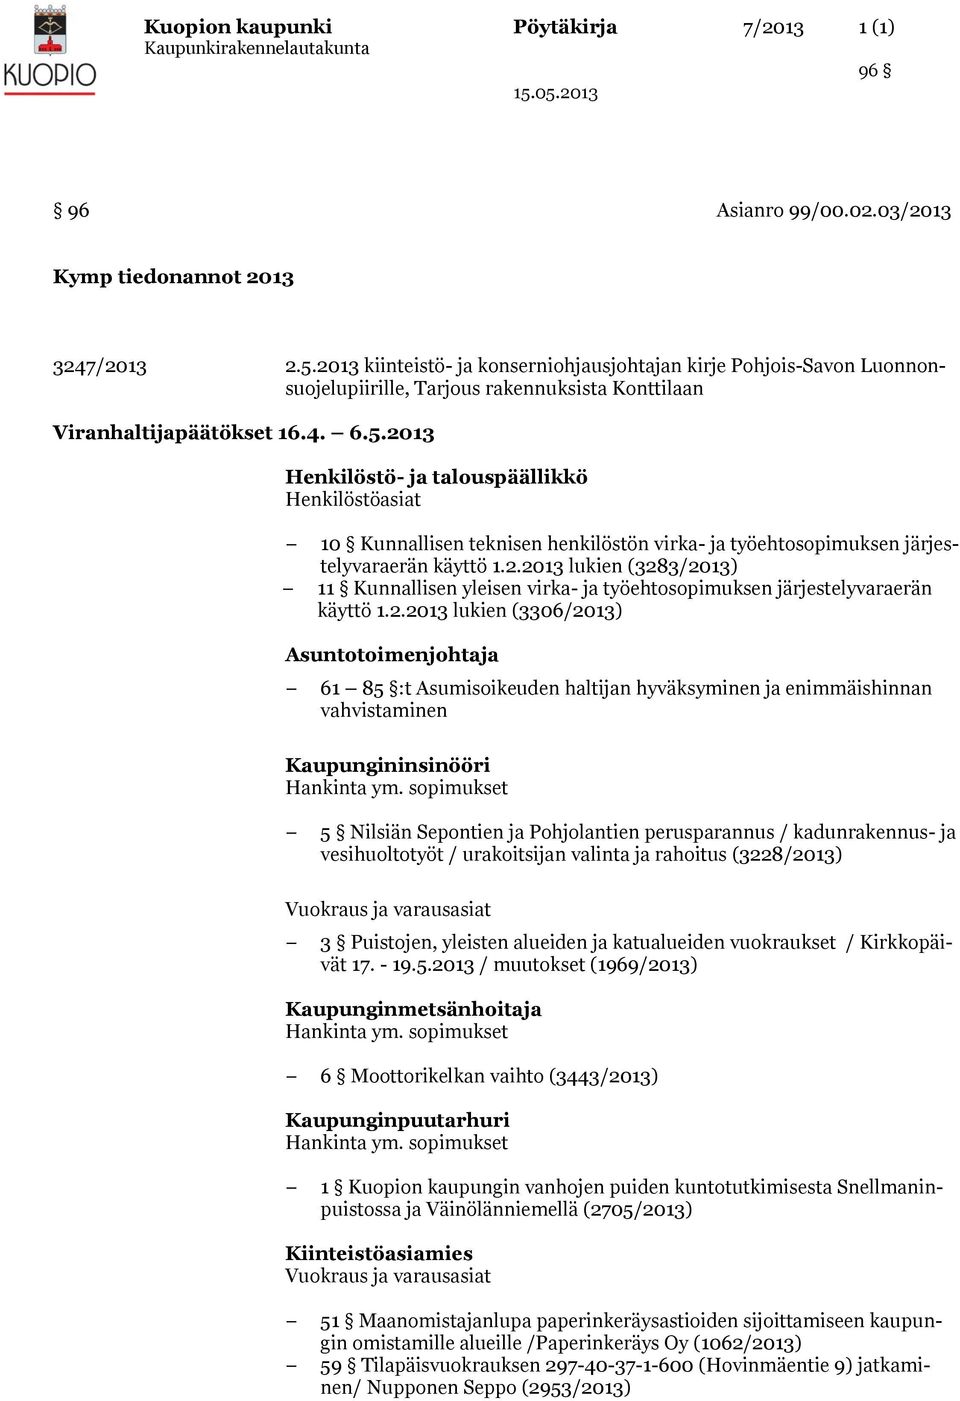 2013 Henkilöstö- ja talouspäällikkö Henkilöstöasiat 10 Kunnallisen teknisen henkilöstön virka- ja työehtosopimuksen järjestelyvaraerän käyttö 1.2.2013 lukien (3283/2013) 11 Kunnallisen yleisen virka- ja työehtosopimuksen järjestelyvaraerän käyttö 1.